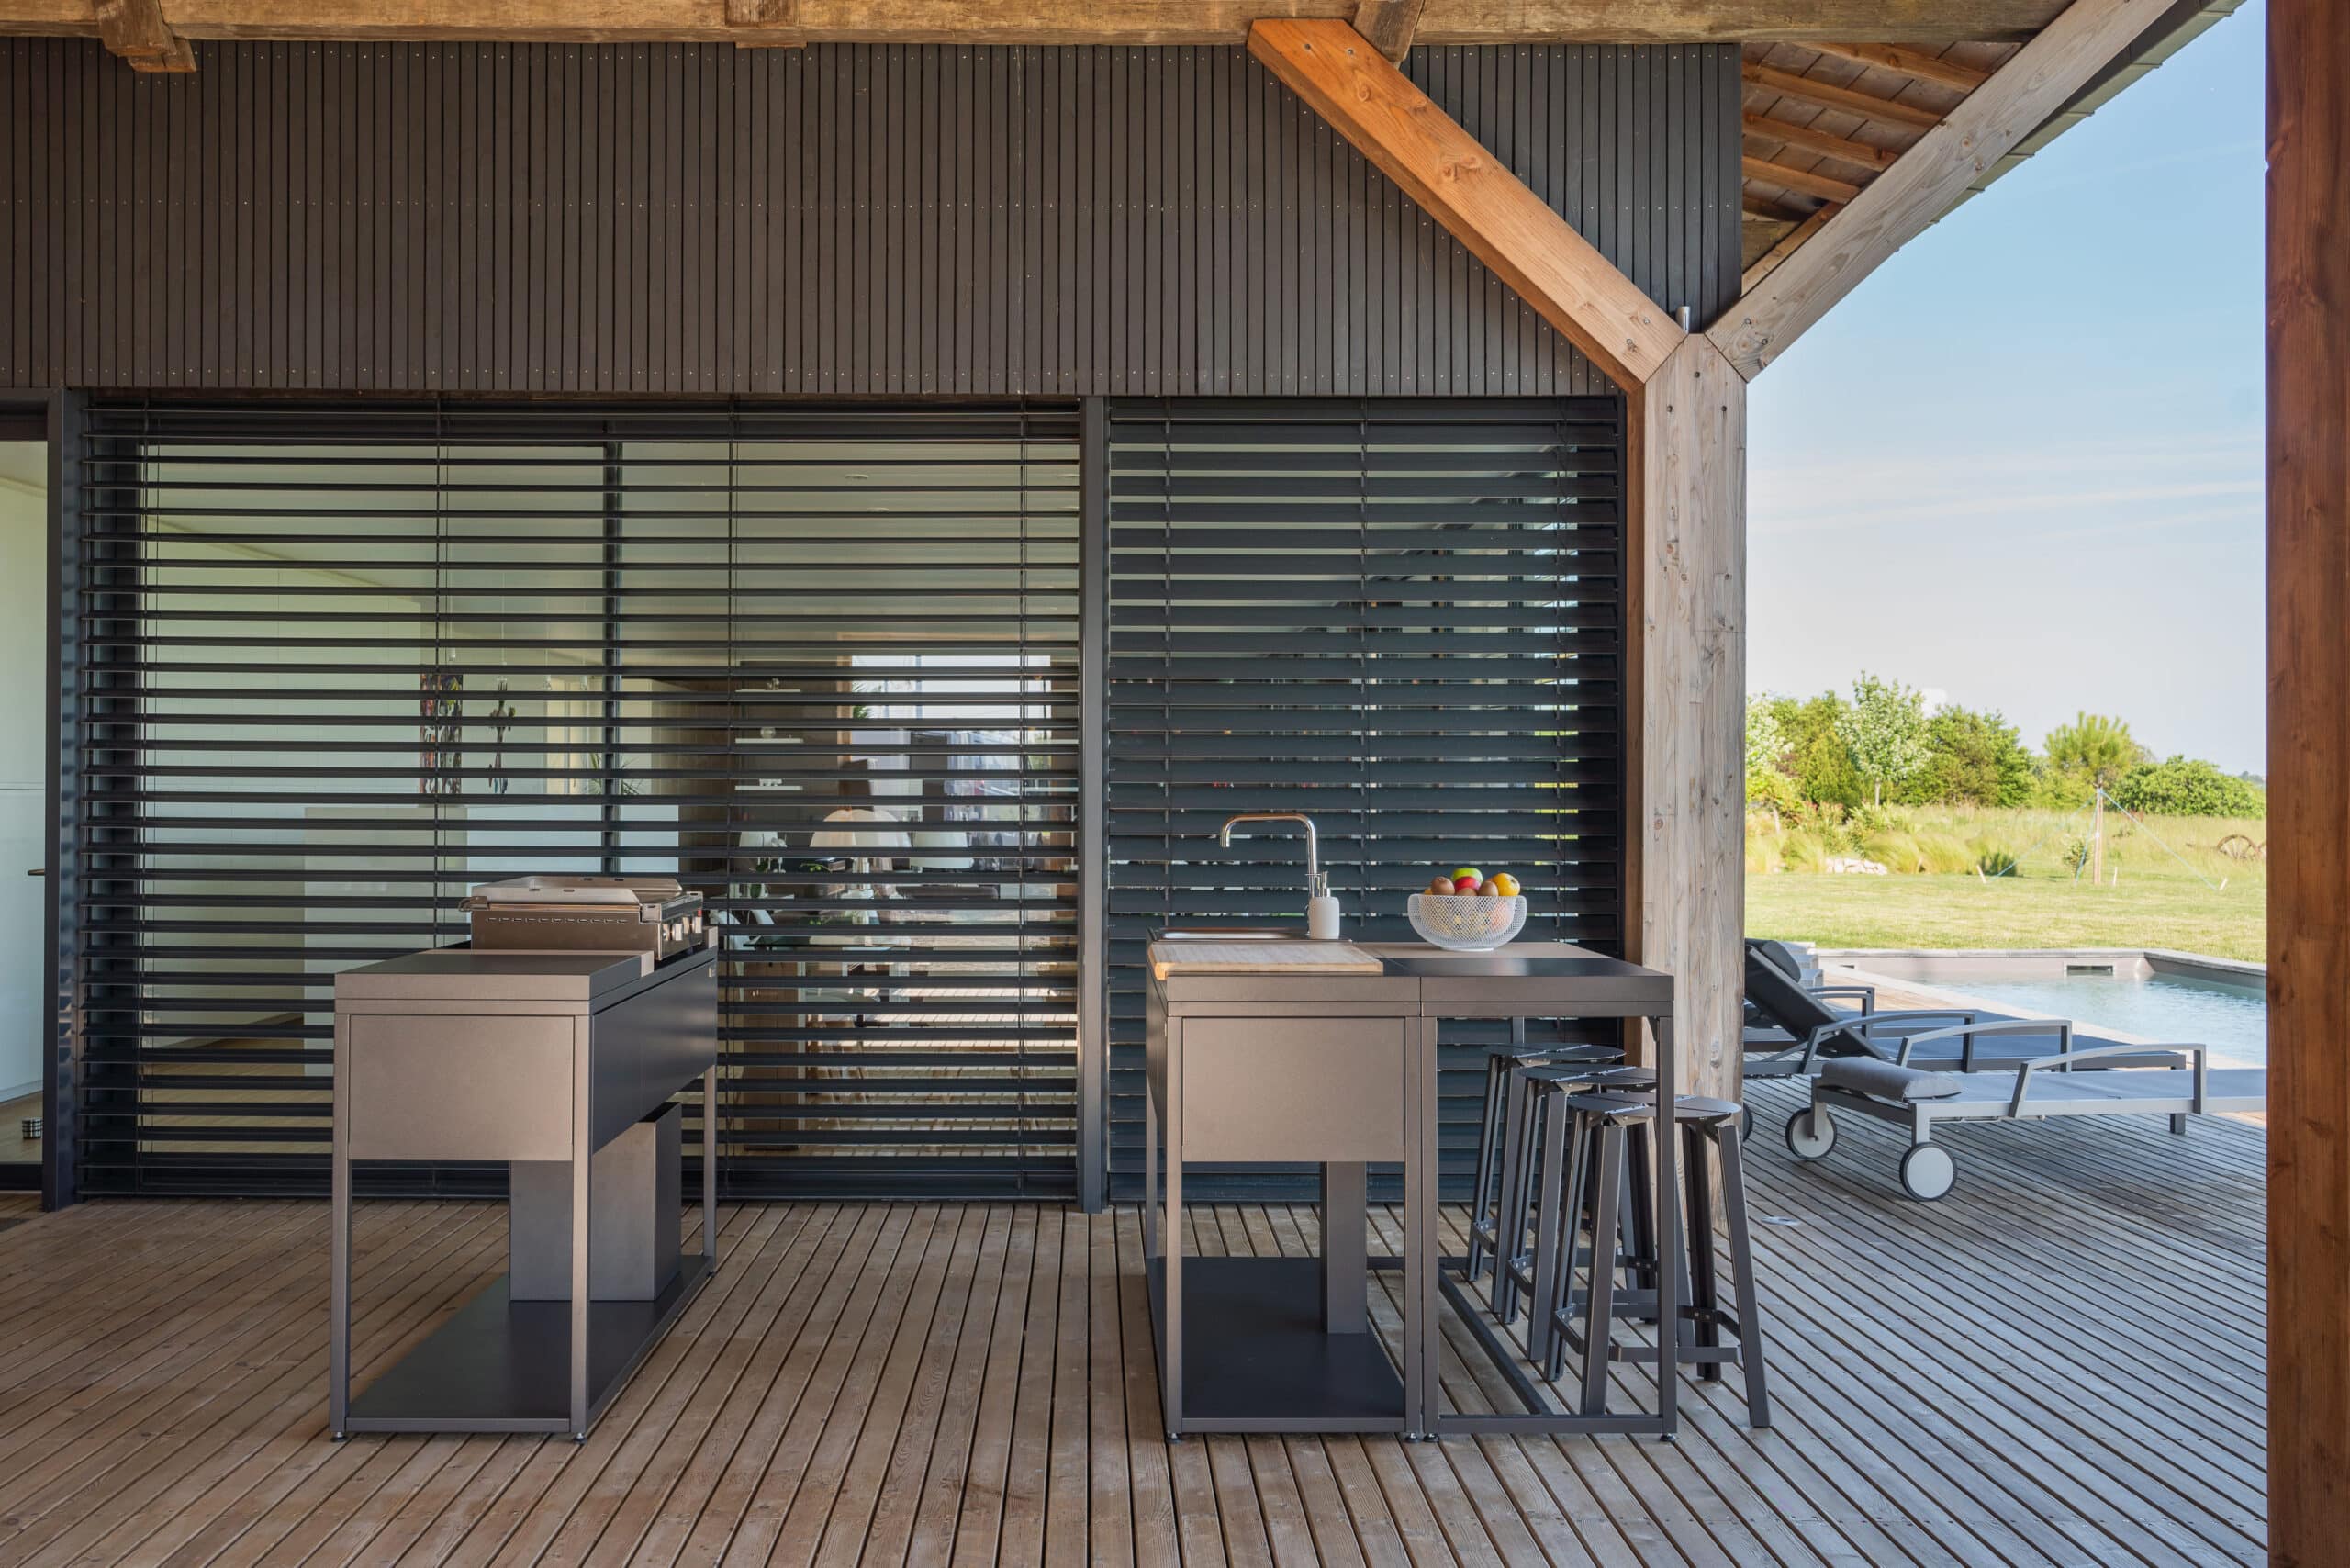 Deux modules de cuisine d'extérieur Soleil Carré positionnés parallèlement sur une terrasse sous véranda. Disponible chez Inox Passion